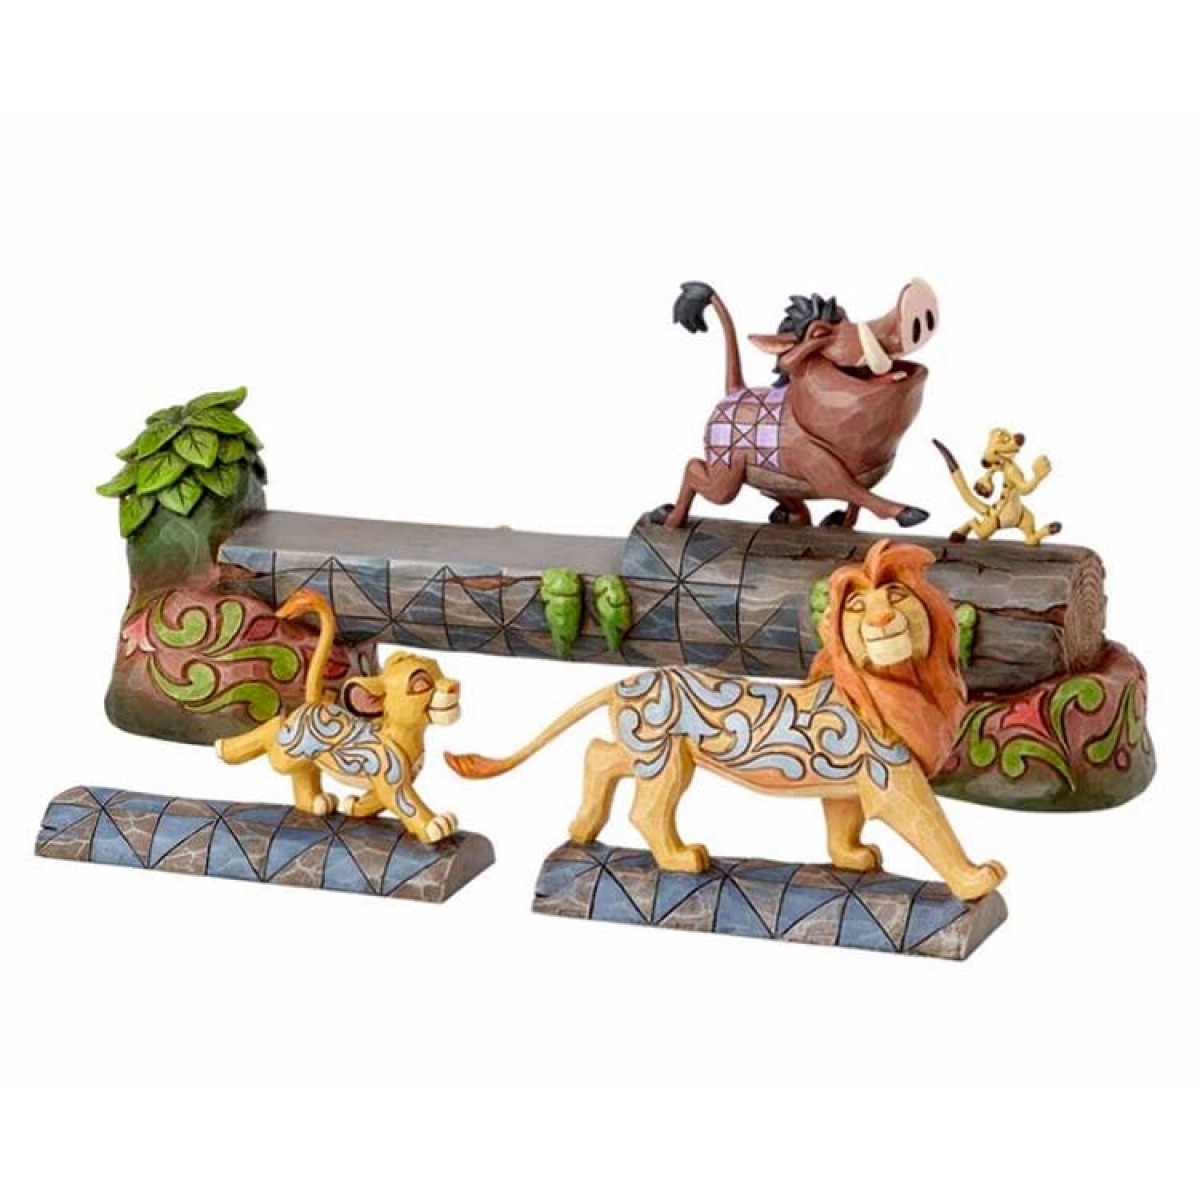 Peluche Disney Le Roi Lion Pumba 55 cm